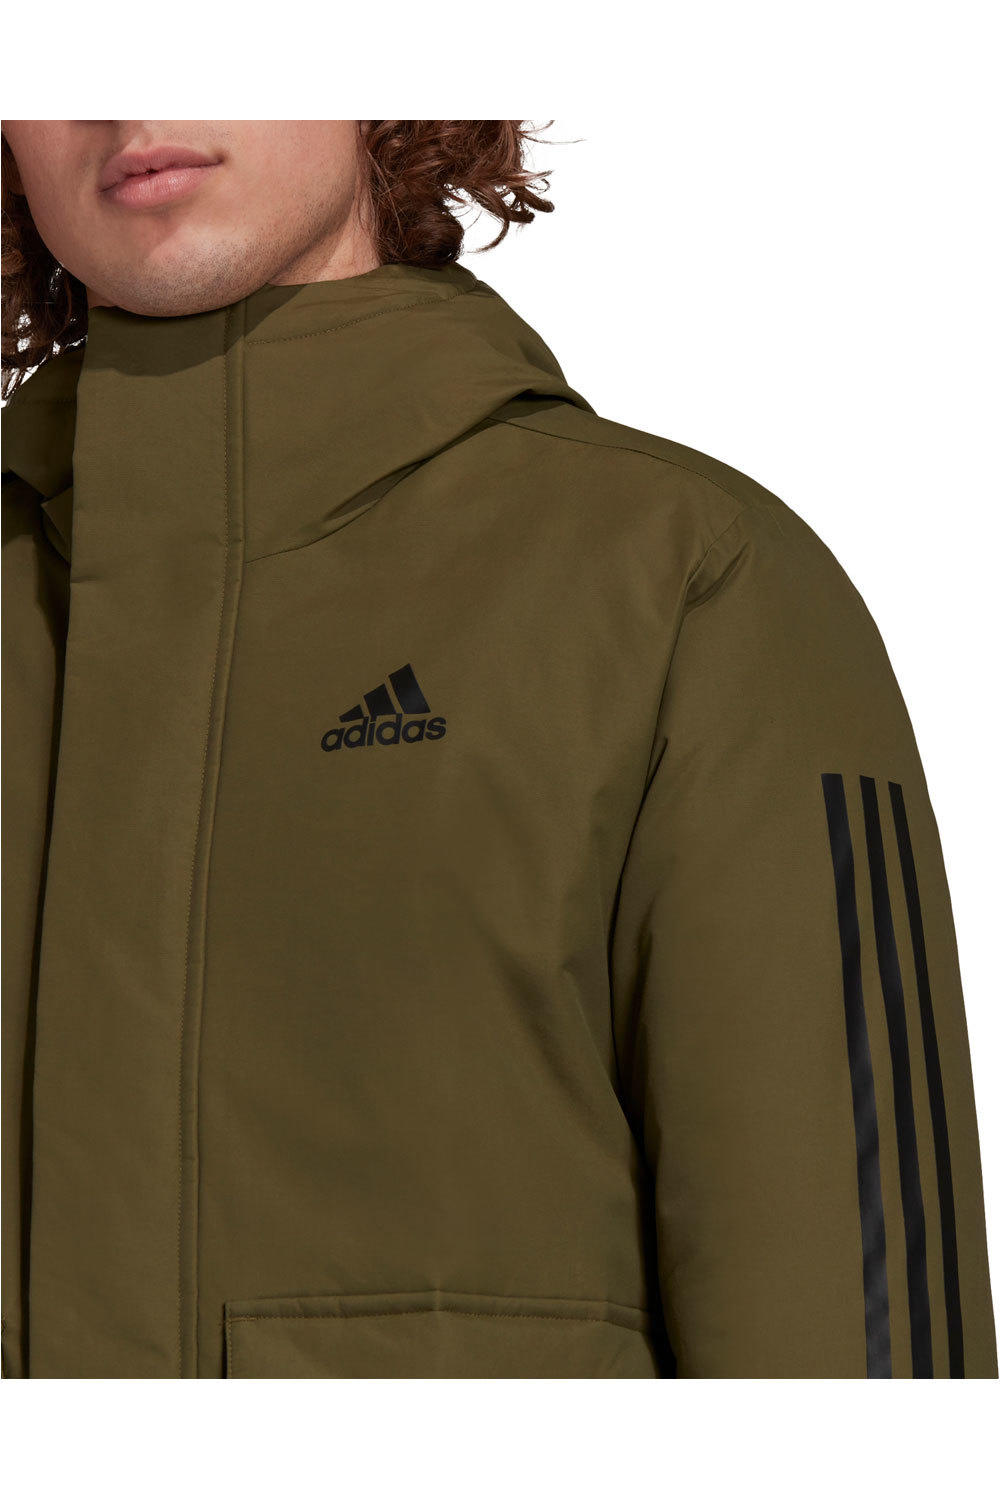 adidas chaqueta outdoor hombre Utilitas 3 bandas Unisex con capucha vista detalle